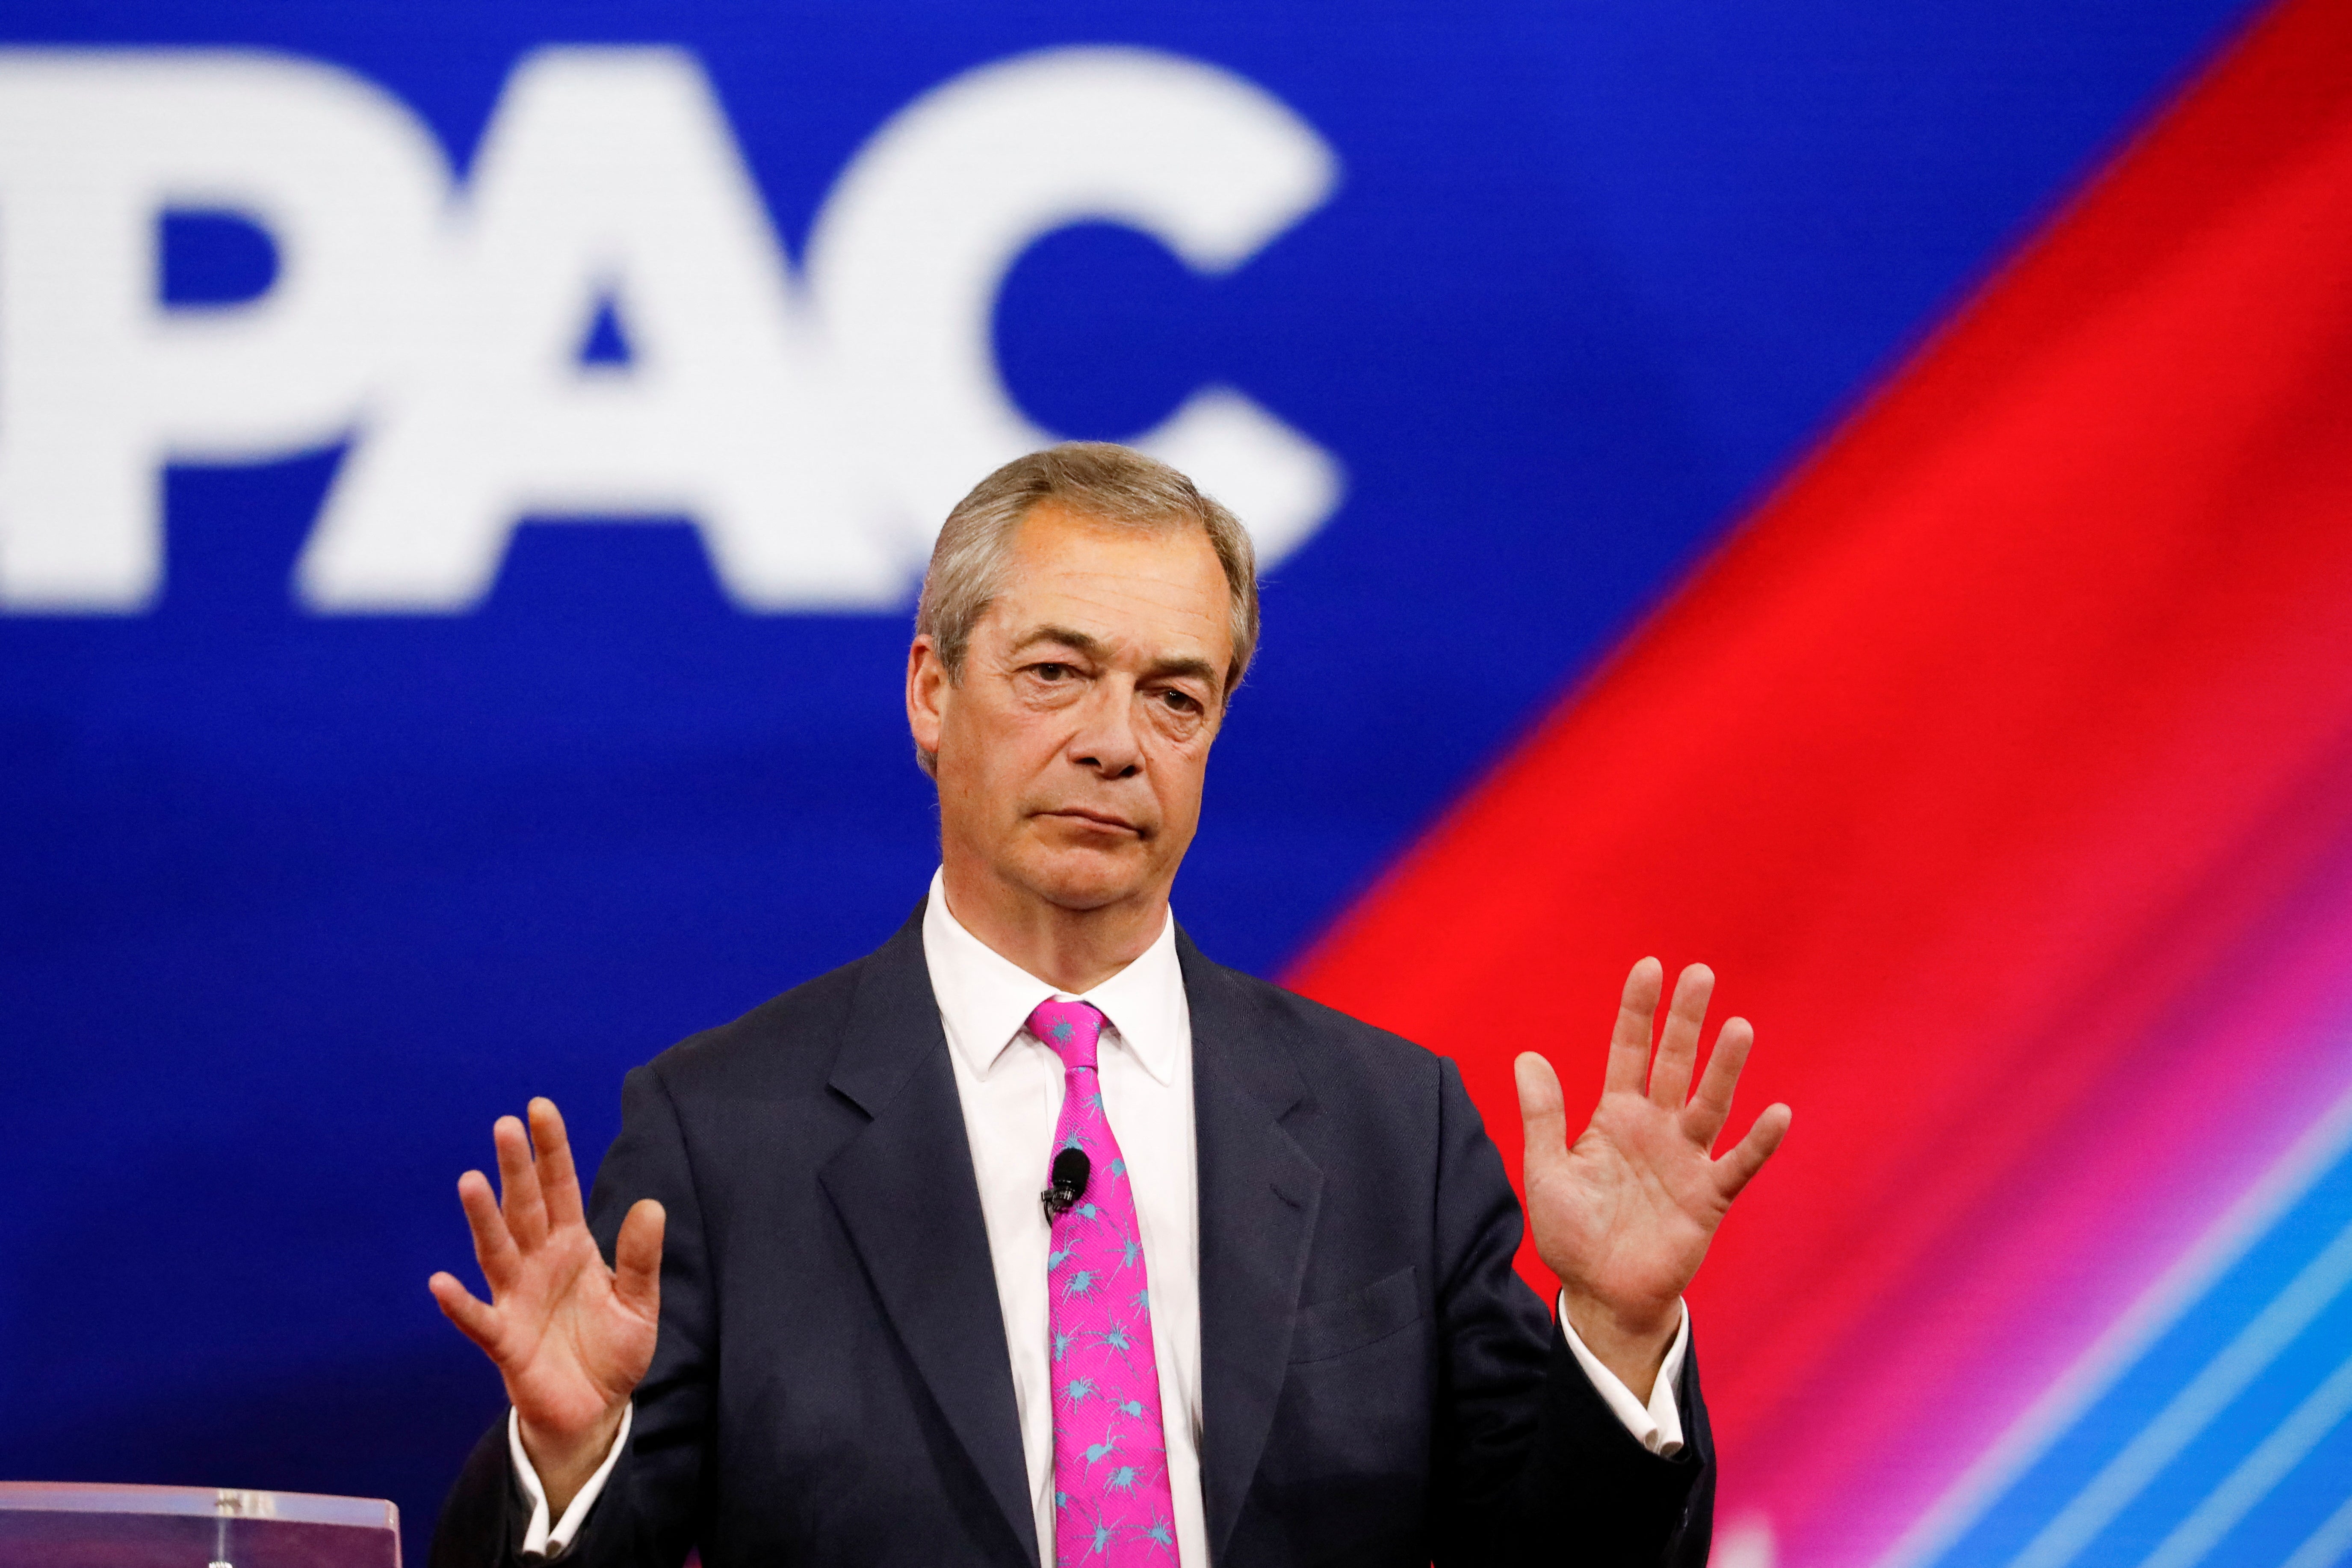 Former Brexit Party leader Nigel Farage